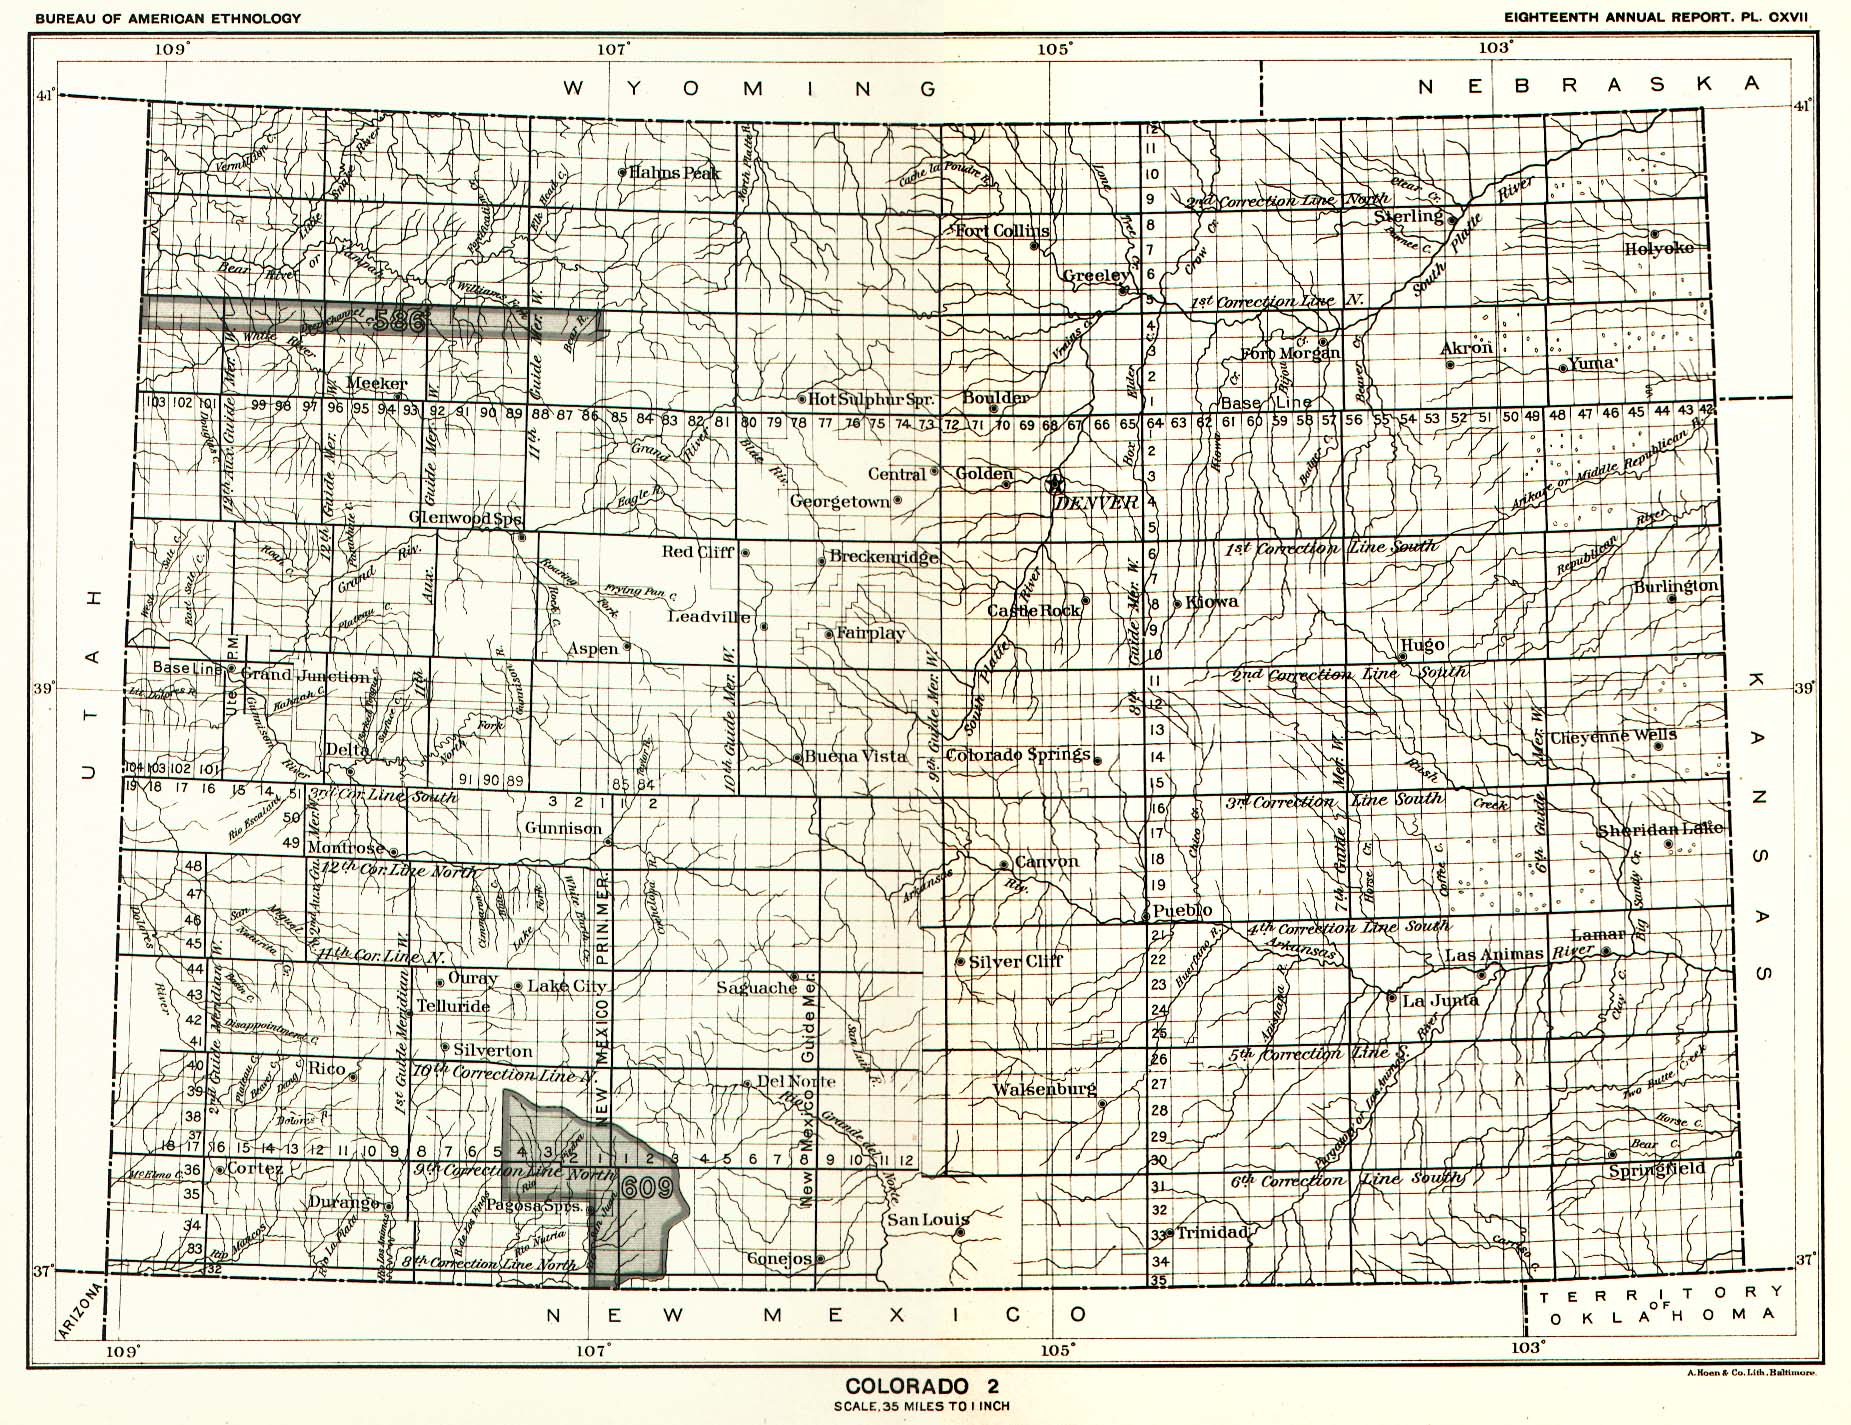 Colorado 2, Map 10